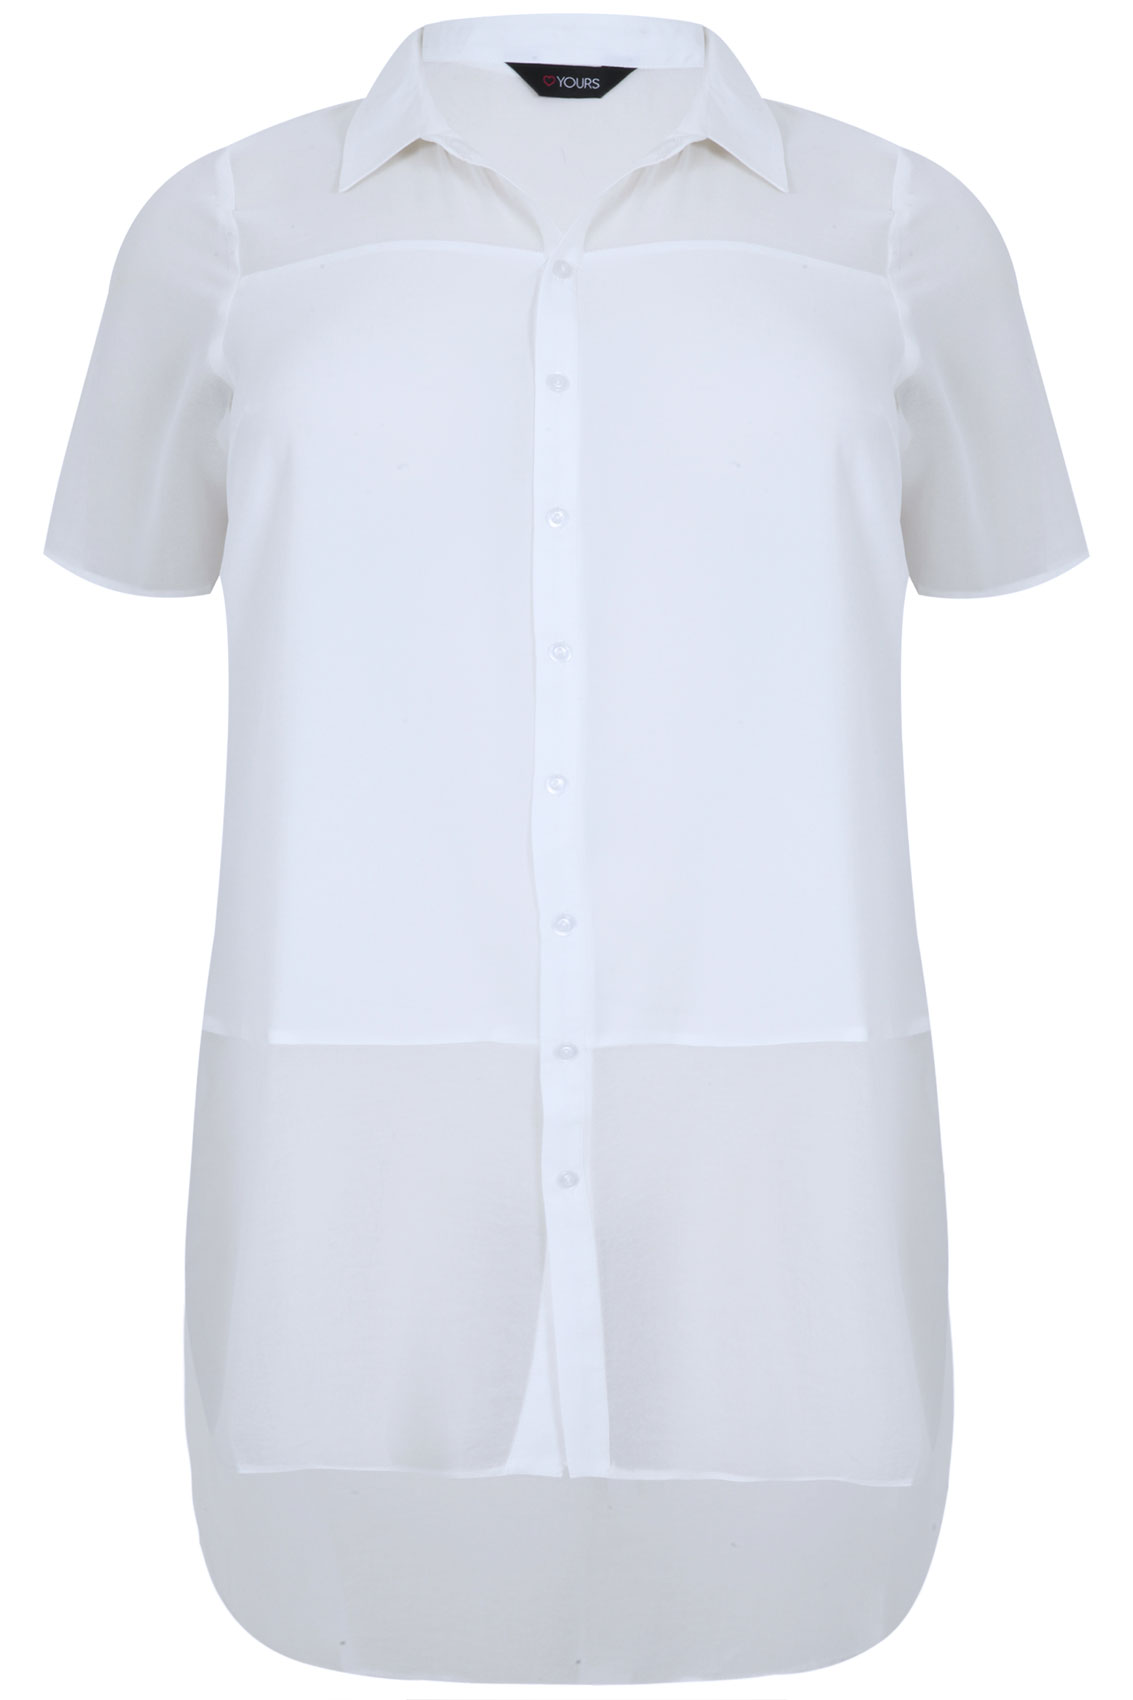 Ivory Short Sleeve Longline Shirt With Sheer Panels Plus size 16,18,20 ...